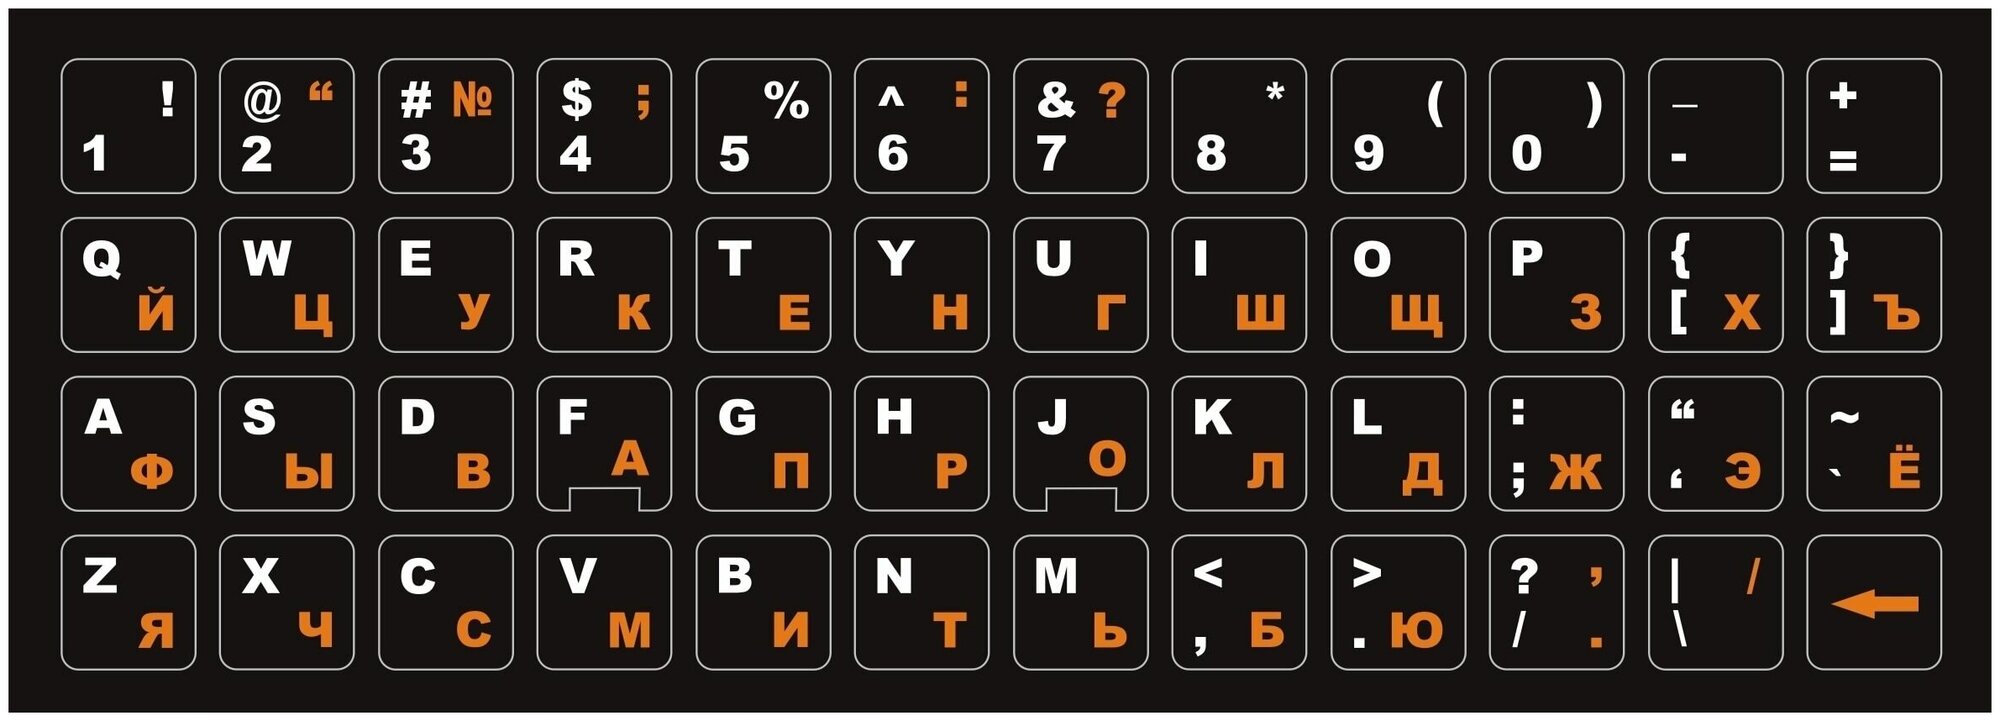 Русские наклейки на клавиатуру, русские буквы, защита для клавиатуры, русификация клавиатуры, чёрный фон 13x13 мм.